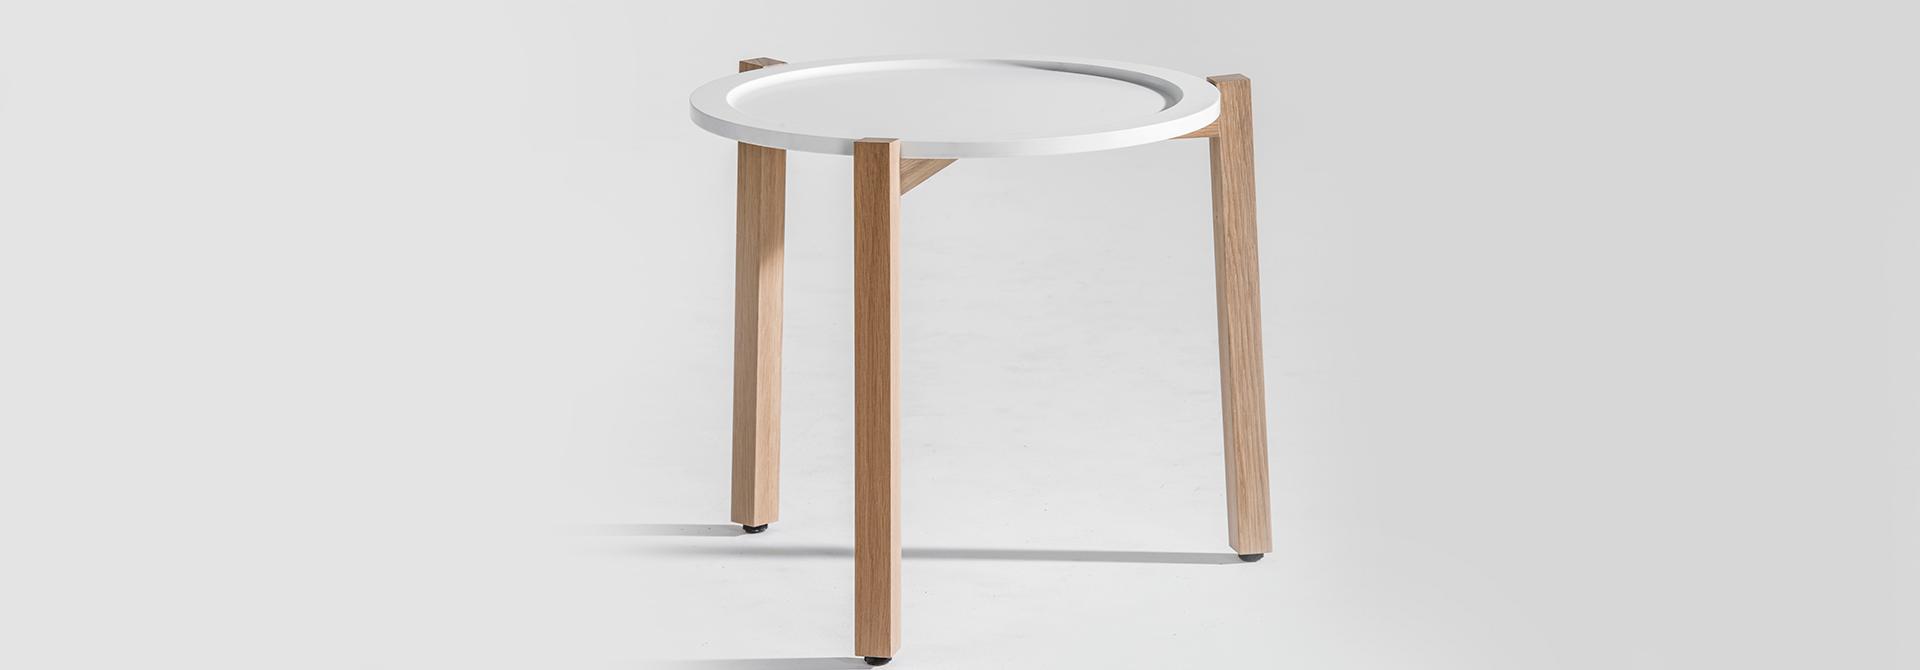 Table d'appoint blanc avec pieds de table en bois